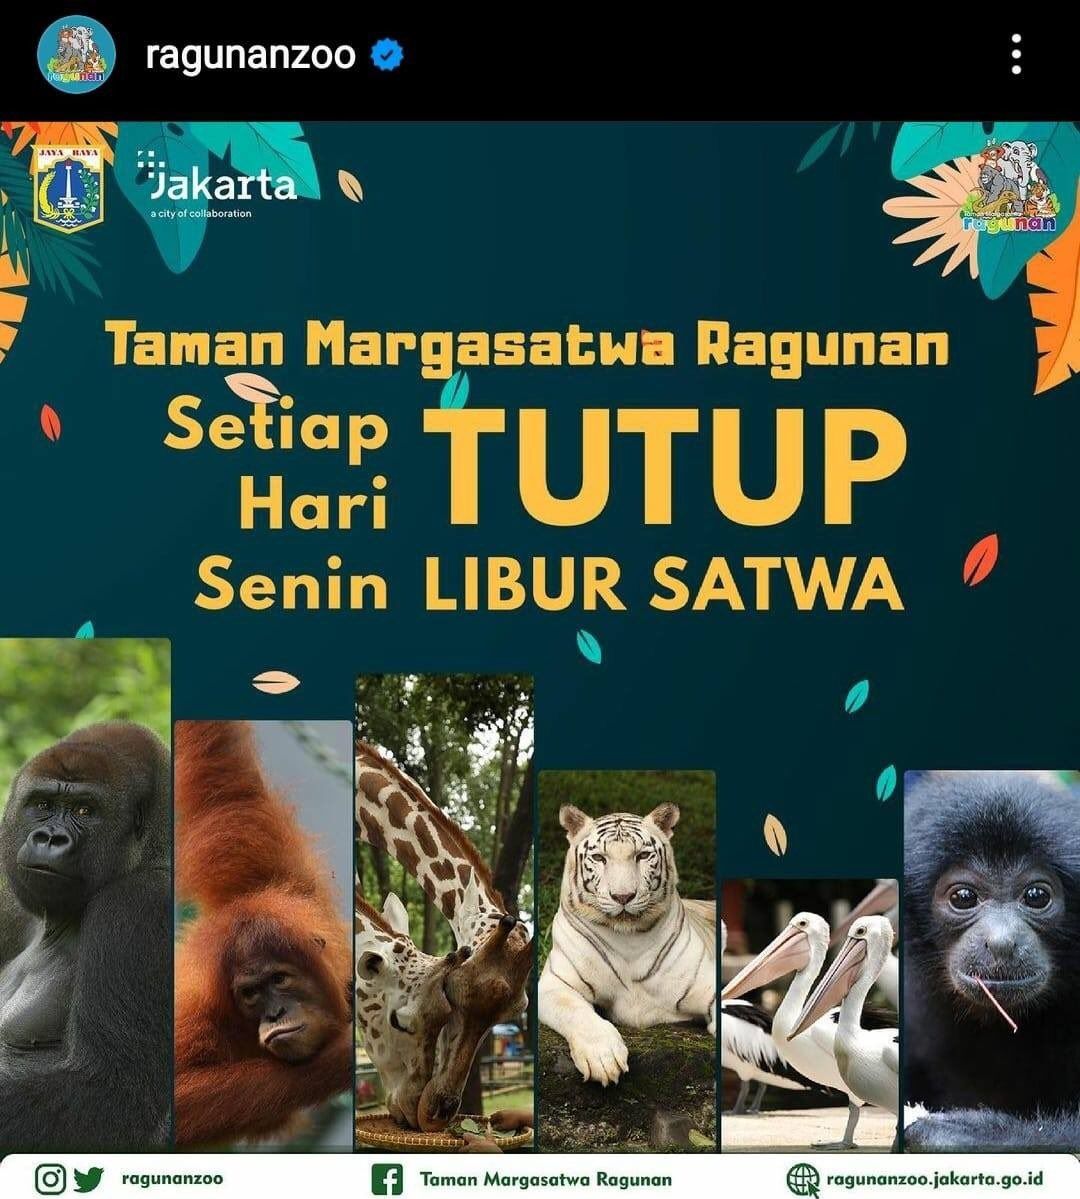 Poster unggahan Taman Margasatwa Ragunan di Instagram @ragunanzoo membuat bingung karena tata bahasanya